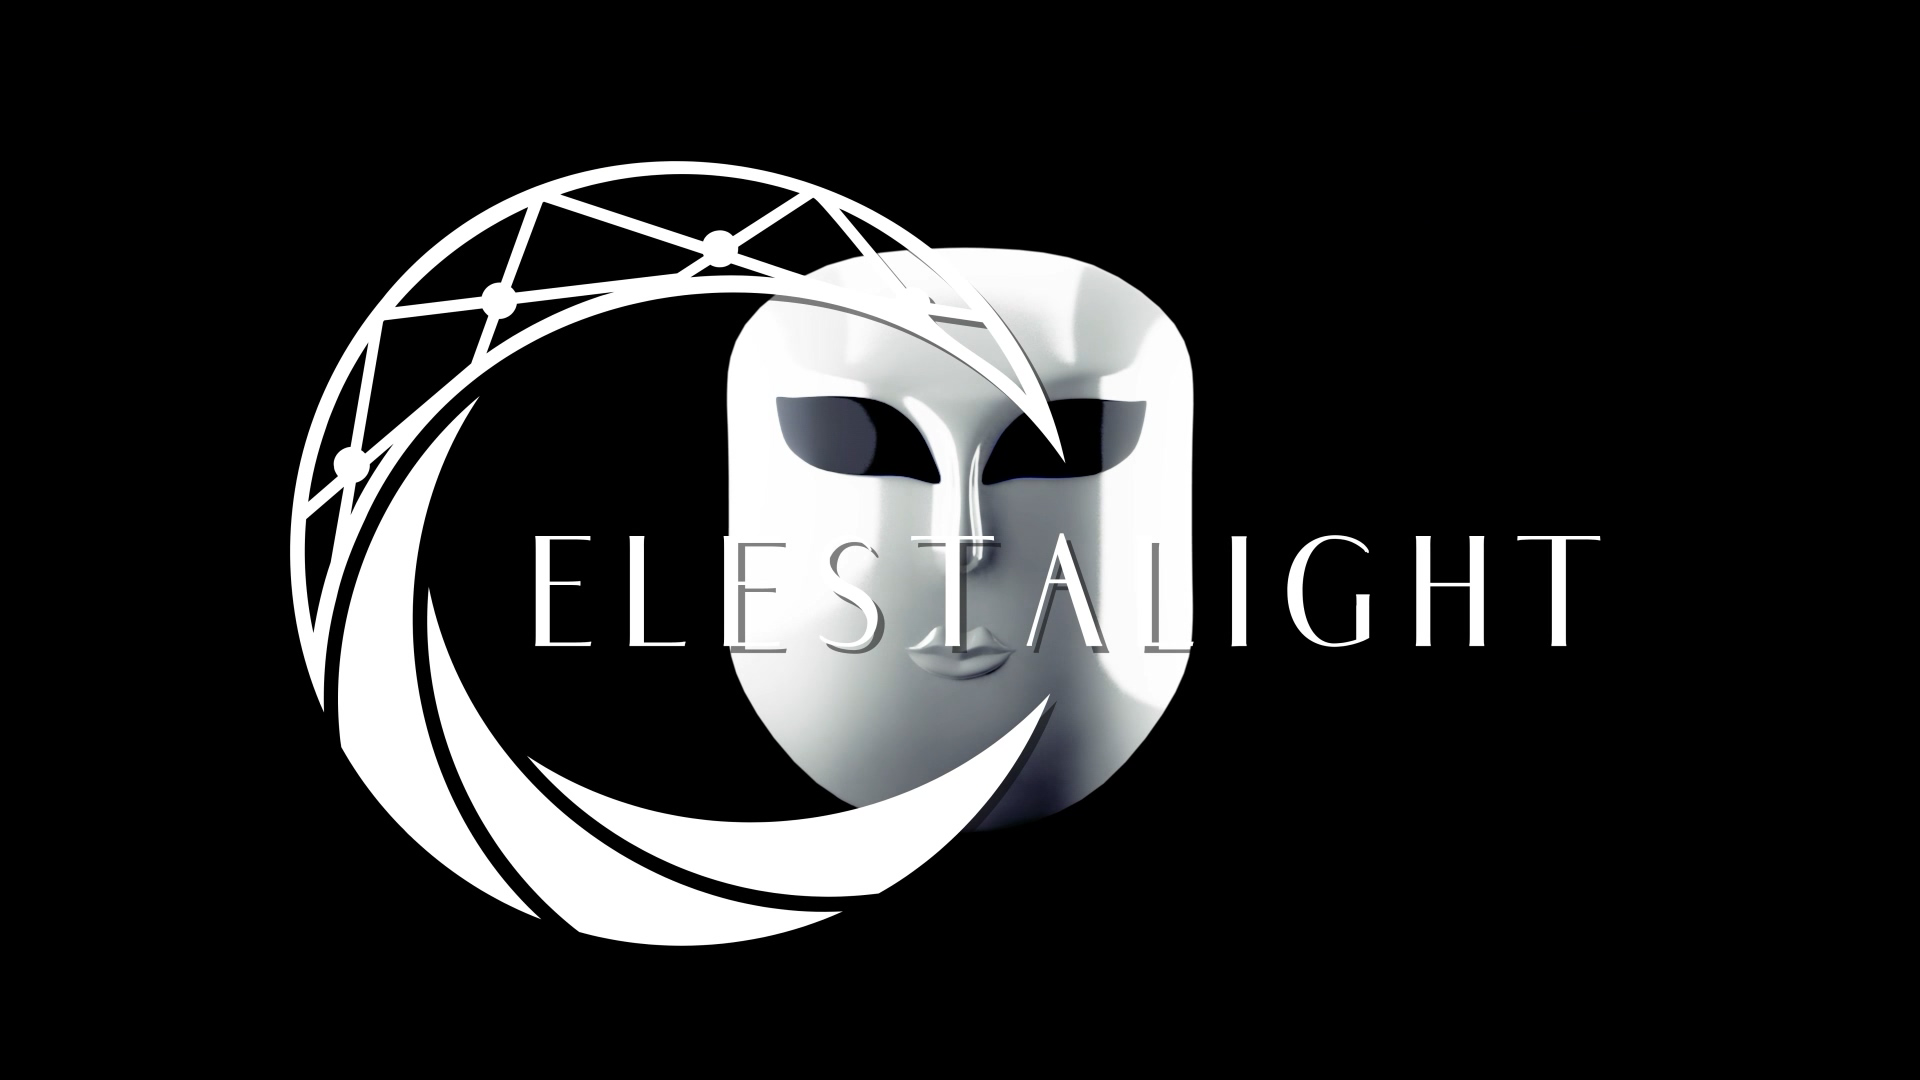 Load video: Celestalight